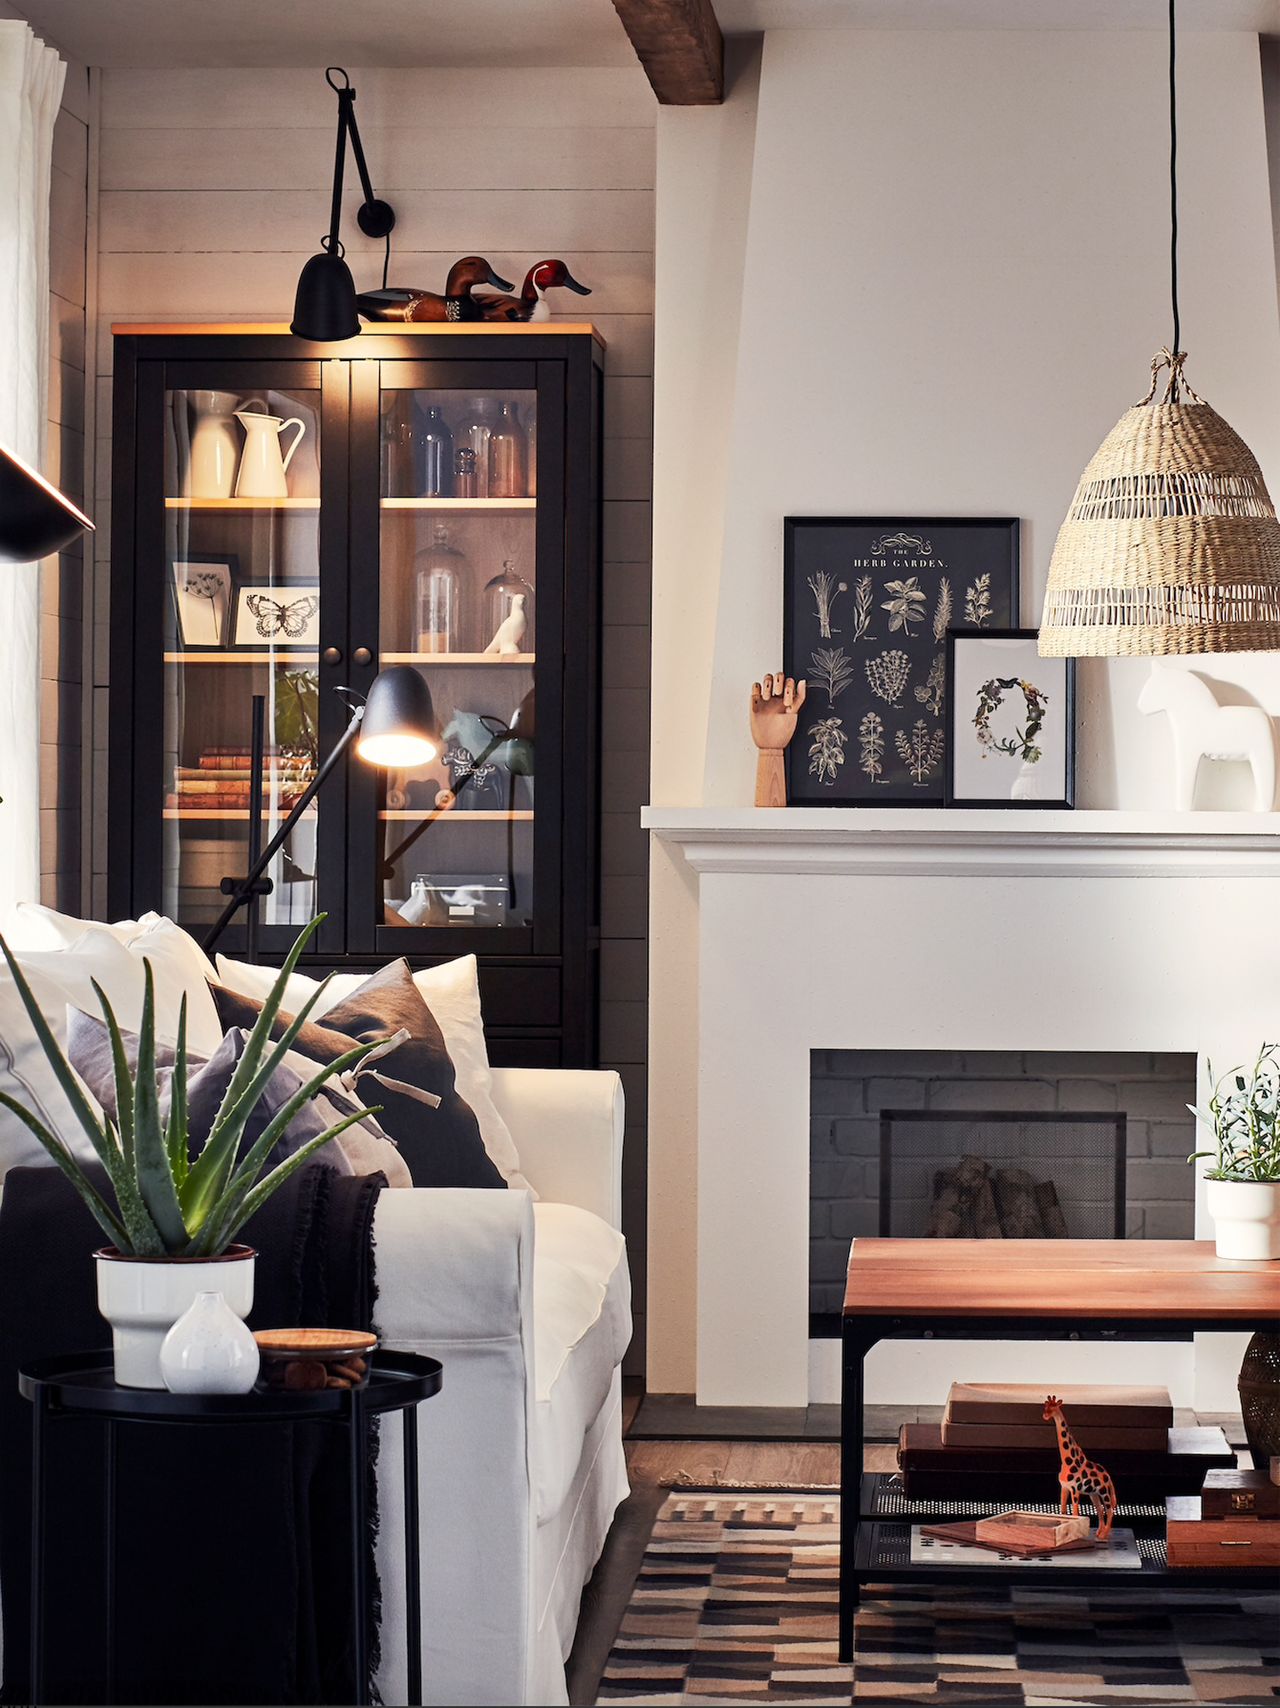 krémové nápady na obývací pokoj: Krémový obývací pokoj s výraznými černými akcenty přes nábytkové rámy a regály